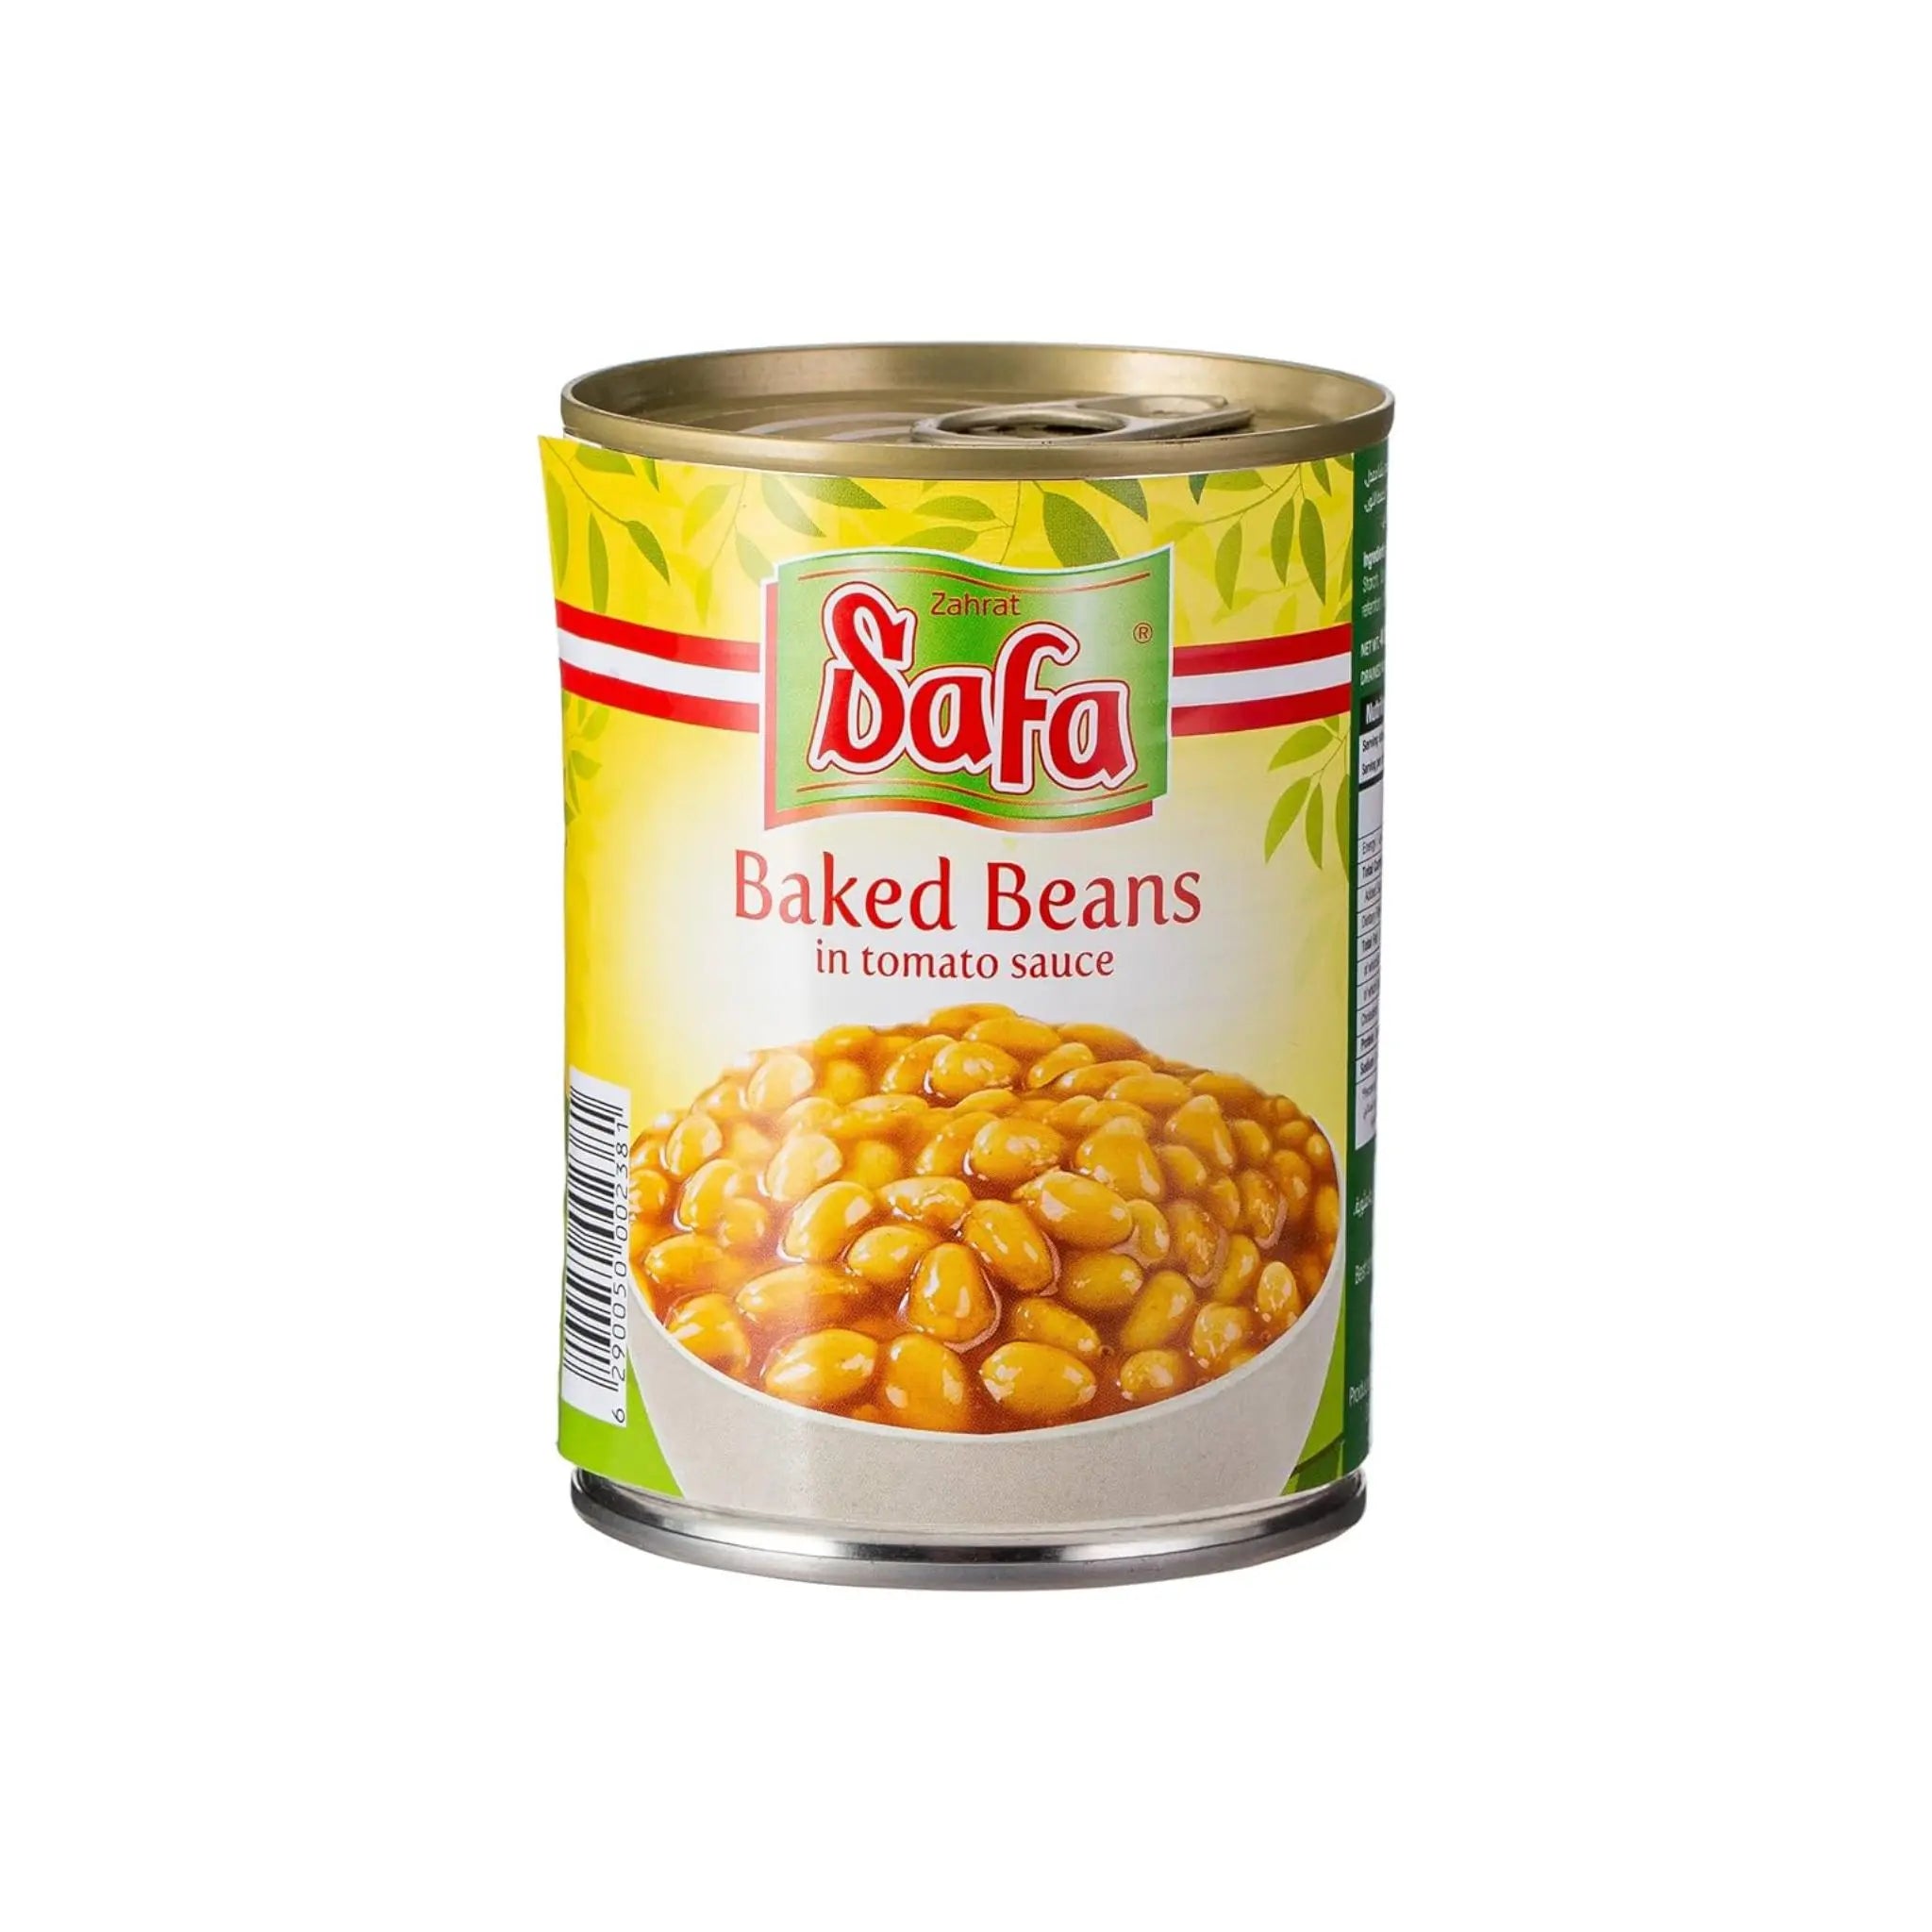 Zahrat Safa Baked Beans - 400gx24 (1 carton) Marino.AE